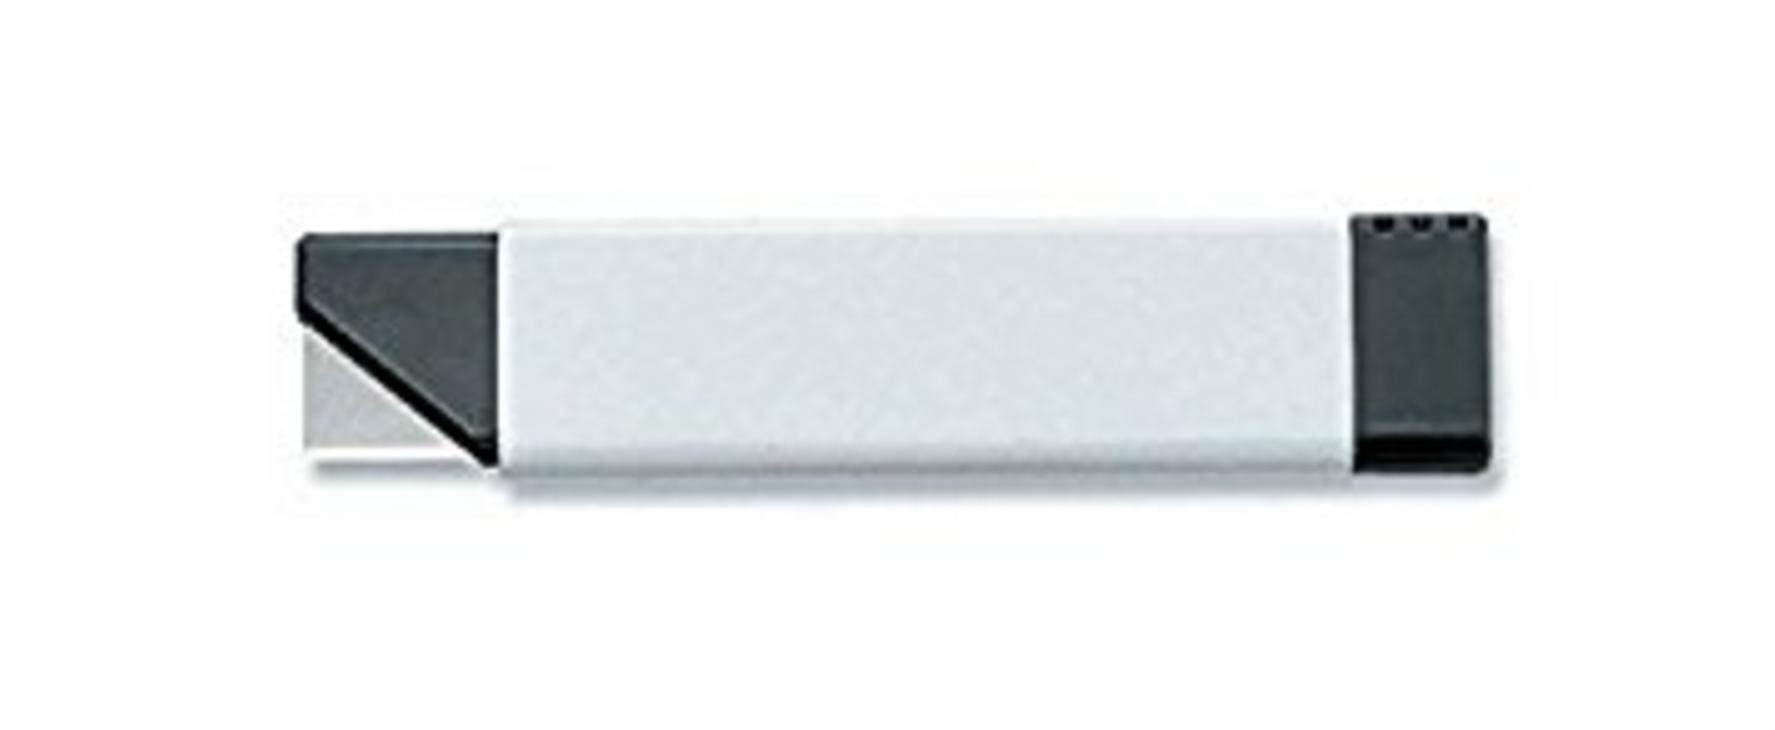 Olfa Cutter OLFA 40 Cuttermesser CTN-1 18mm in Verkaufsdisplay